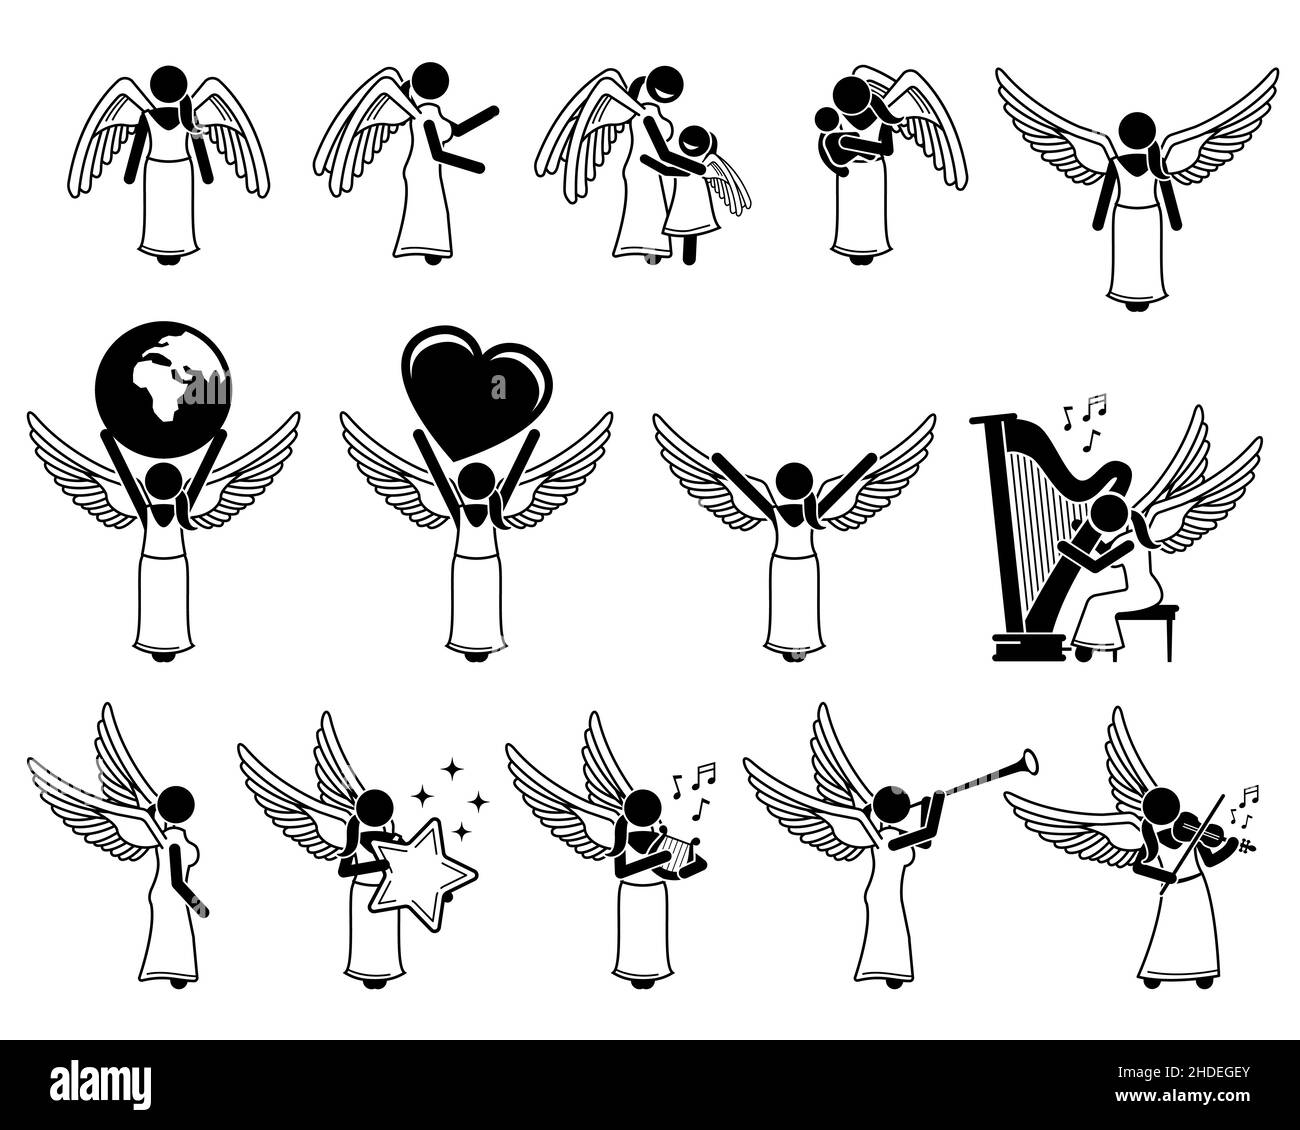 Weibliche Gott Engel Stick Figur Piktogramm Symbole. Vektor-Illustrationen zeigen einen weiblichen Engel mit Flügeln Charakter Designs, halten ein Kind, Erde, Liebe, Stock Vektor